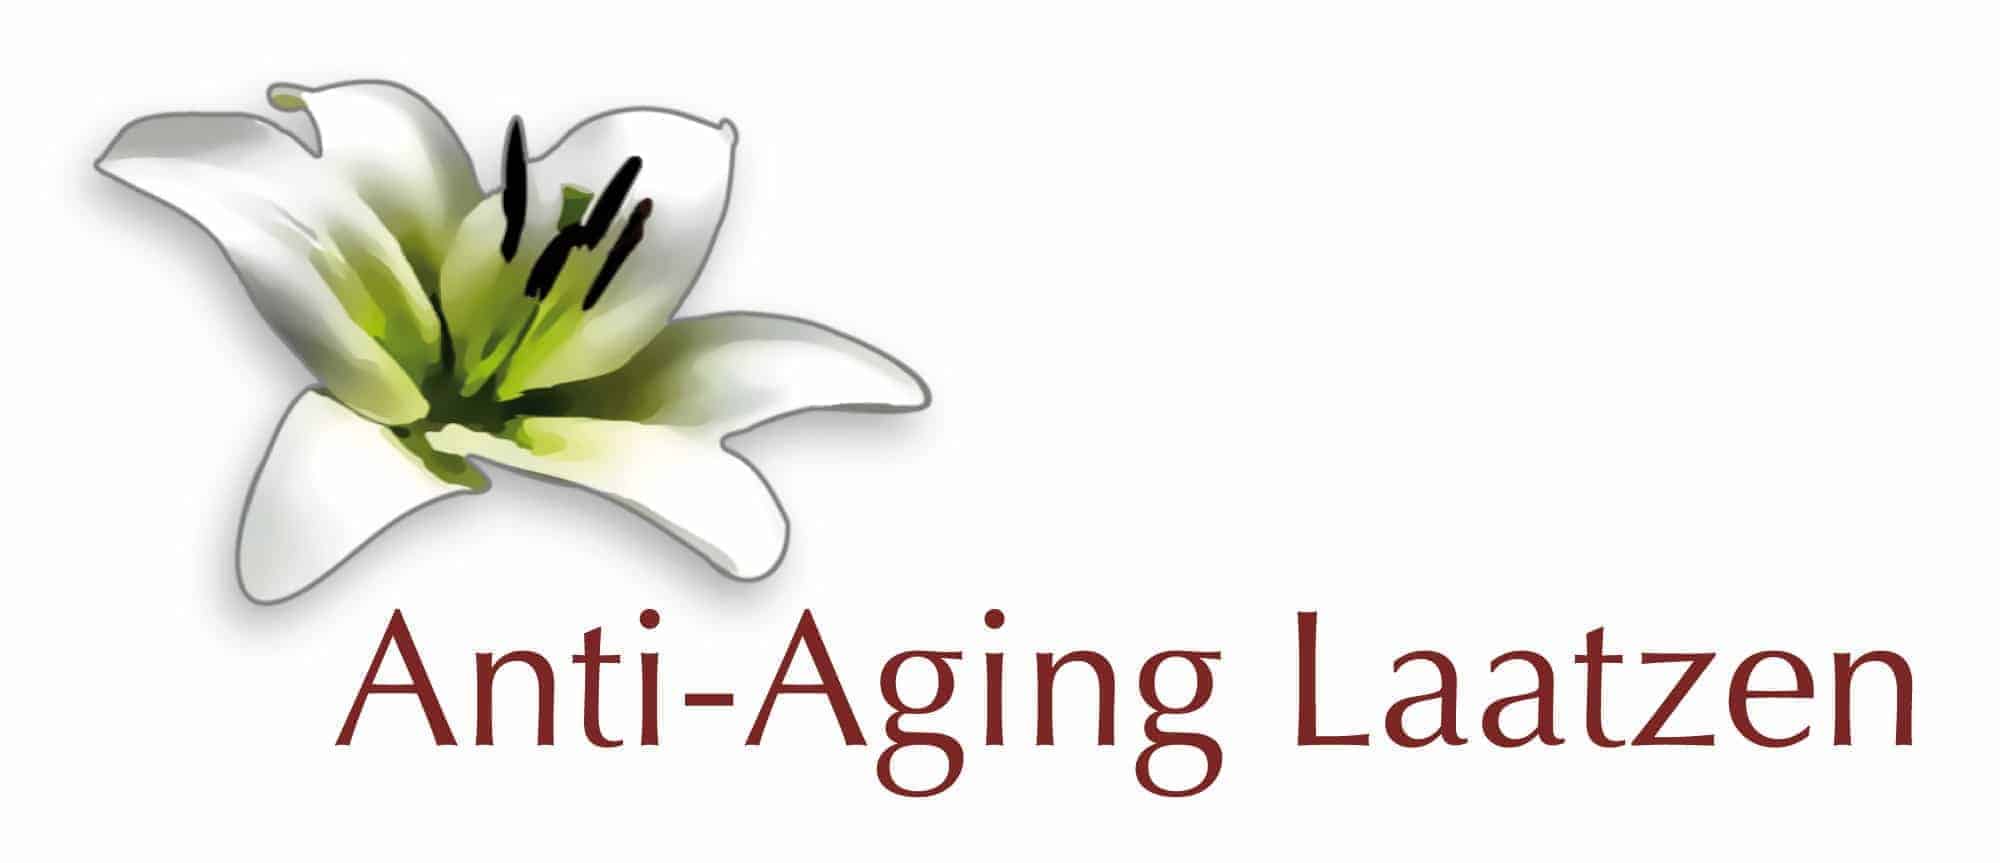 logo-anti-aging-2014-5-jahre-jubilaeum